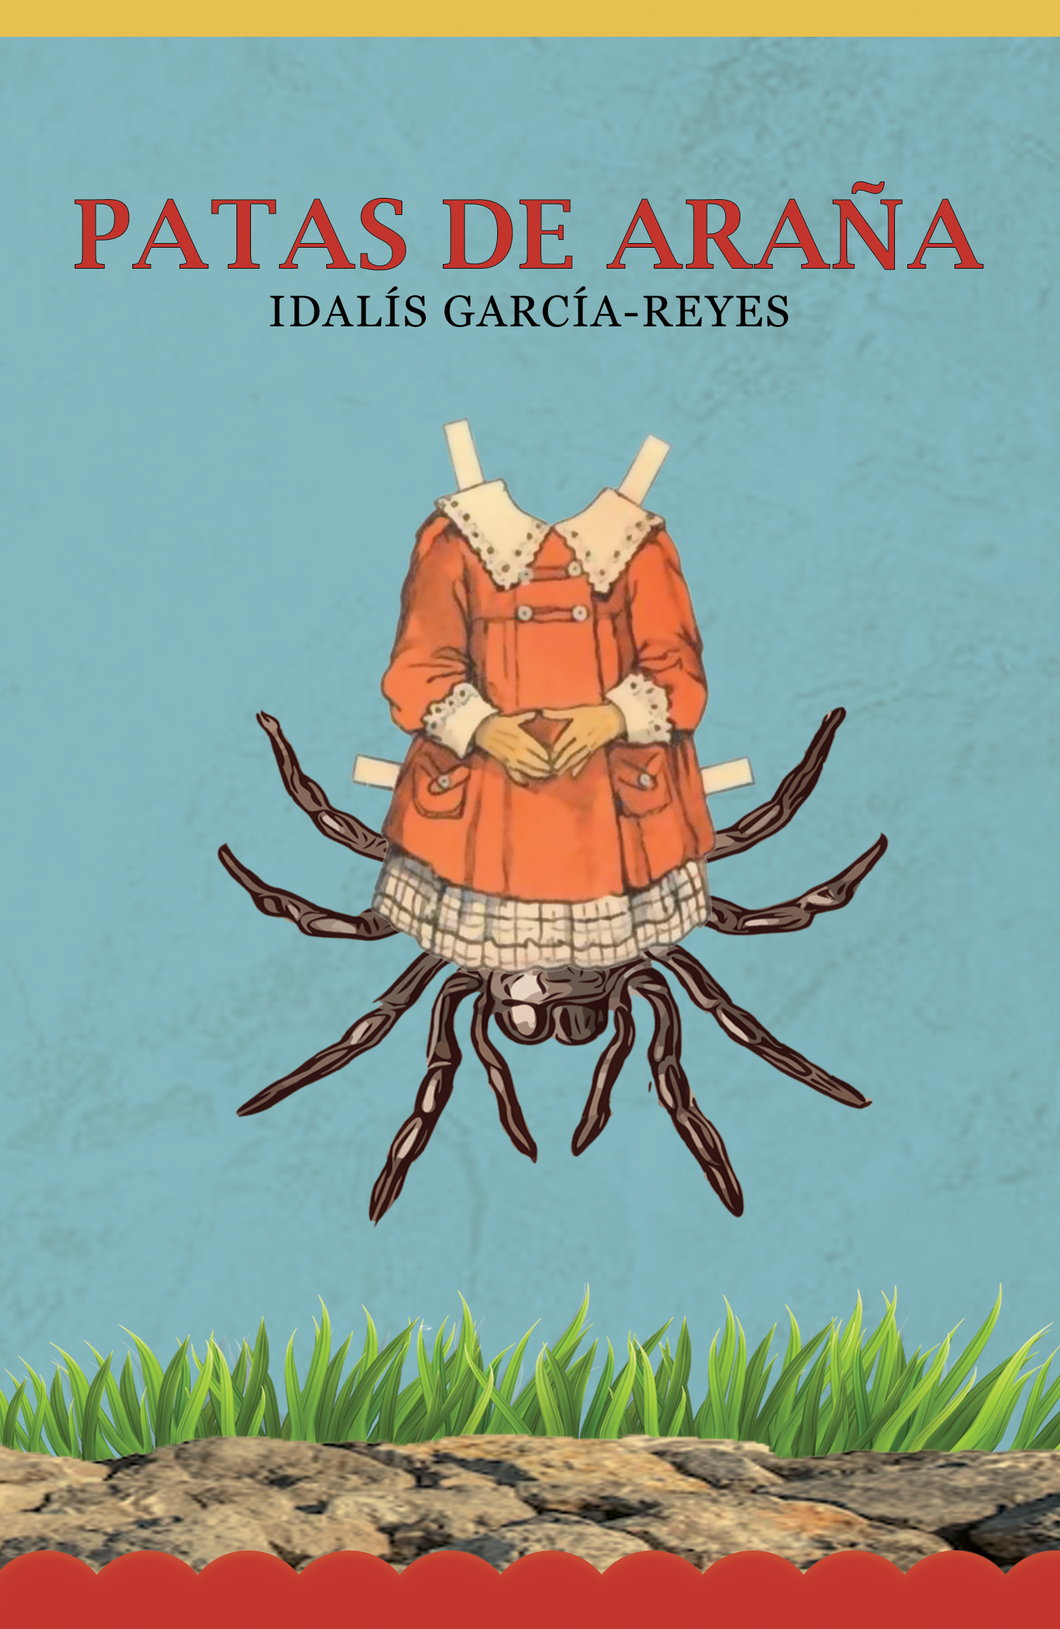 Patas de araña: Idalís García-Reyes